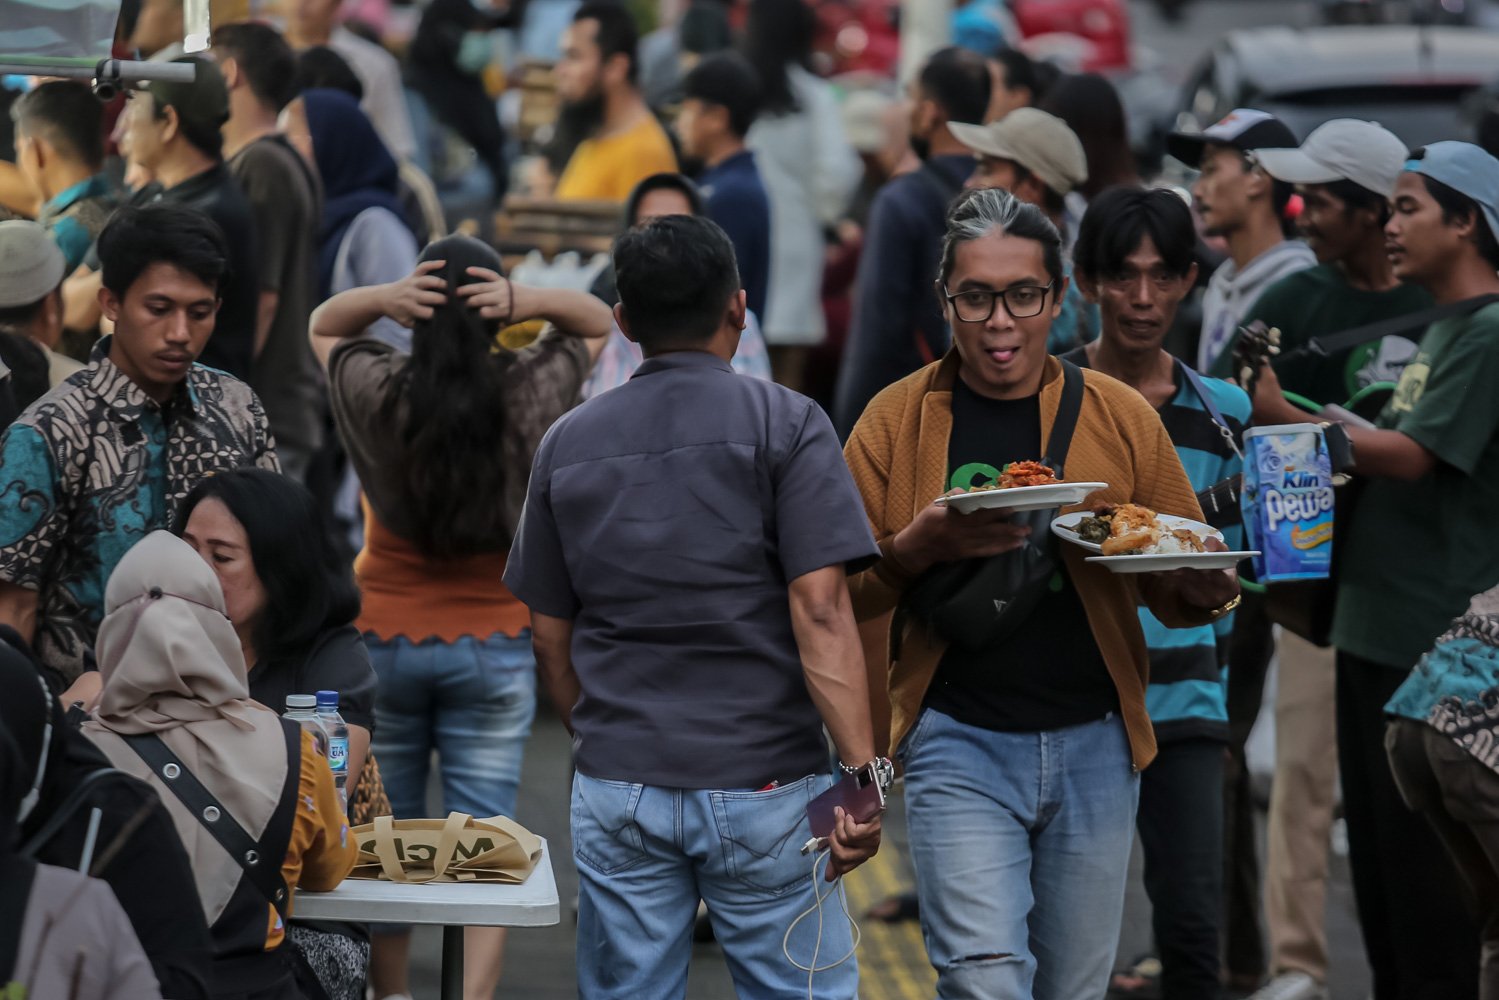 Pengunjung berjalan membawa makanan di Sentra kuliner Nasi Kapau, Jalan Kramat Raya, Senen, Jakarta Pusat, Jumat (24/3). Menjelang berbuka puasa sentra kuliner yang menyajikan Nasi Kapau dan berbagai makanan khas sumatra barat ini ramai dikunjungi pembeli.